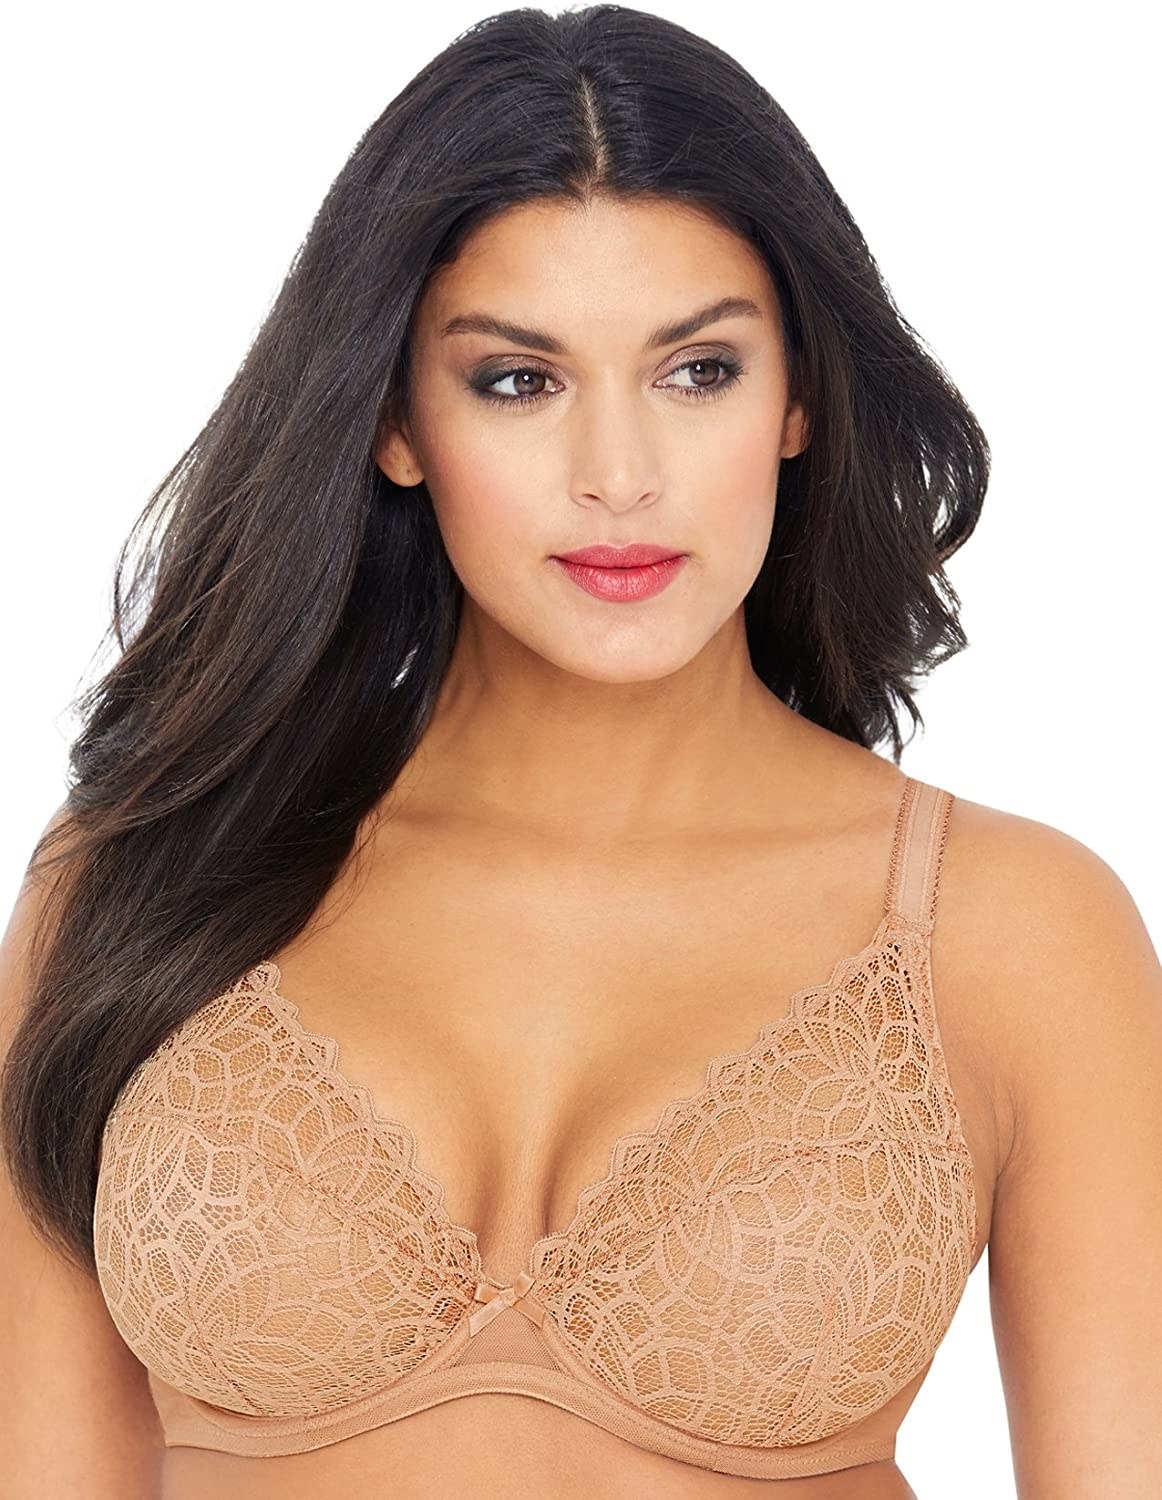 A model wearing the bra in tan